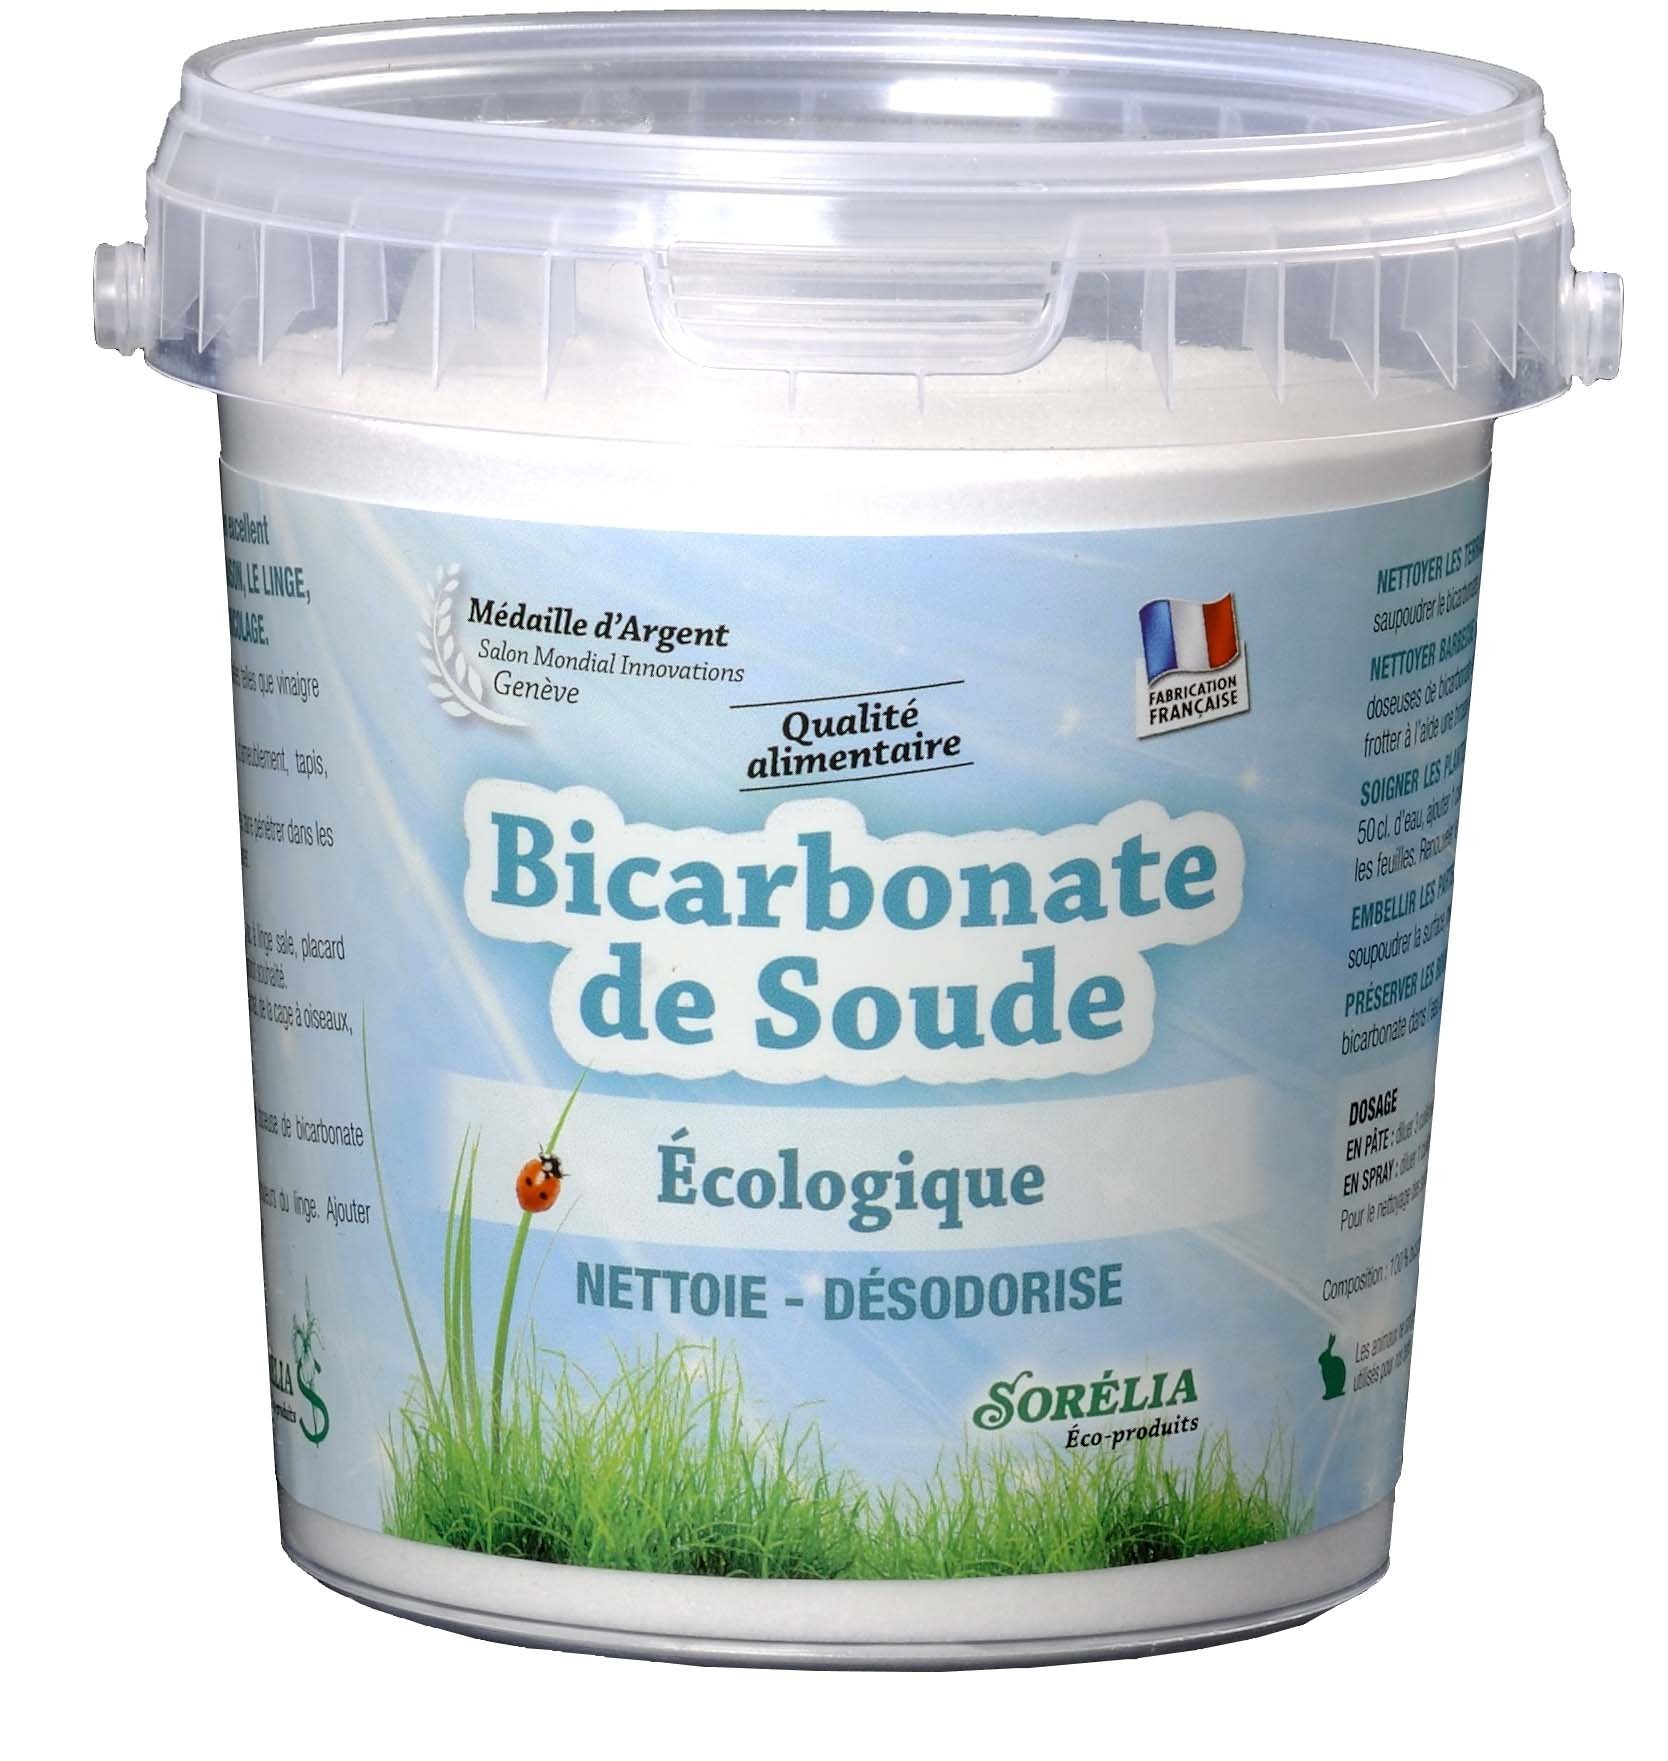 Bicarbonate de soude qualité alimentaire